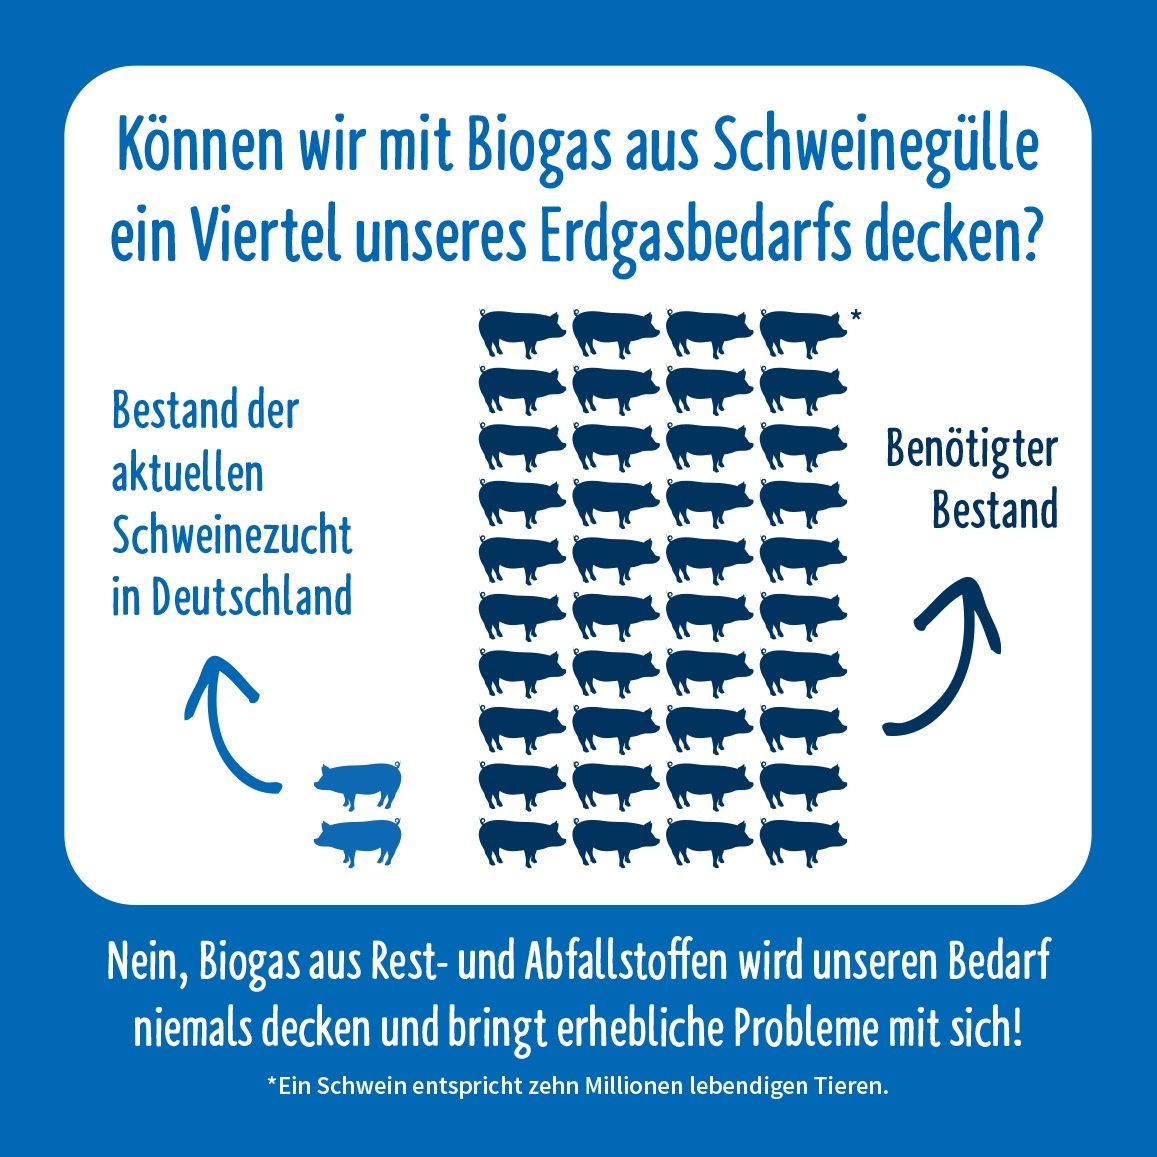 Dänemark hielt 2021 etwa 2,4 Schweine pro Kopf der Bevölkerung. Bei 83 Millionen Deutschen wären es also knapp 200 Millionen Schweine, die in Deutschland nötig wären für die gleiche Menge Gülle pro Person. Wir verbrauchen aber in Deutschland mehr als doppelt so viel Gas pro Person wie in Dänemark. Das heißt, wir bräuchten 400 Mio. Schweine für einen vergleichbaren Anteil Biogas. Aktuell werden in Deutschland etwa 20 Millionen Schweine gehalten, es wäre also eine völlig unrealistische Menge - Grafik: NABU/süsses+saures